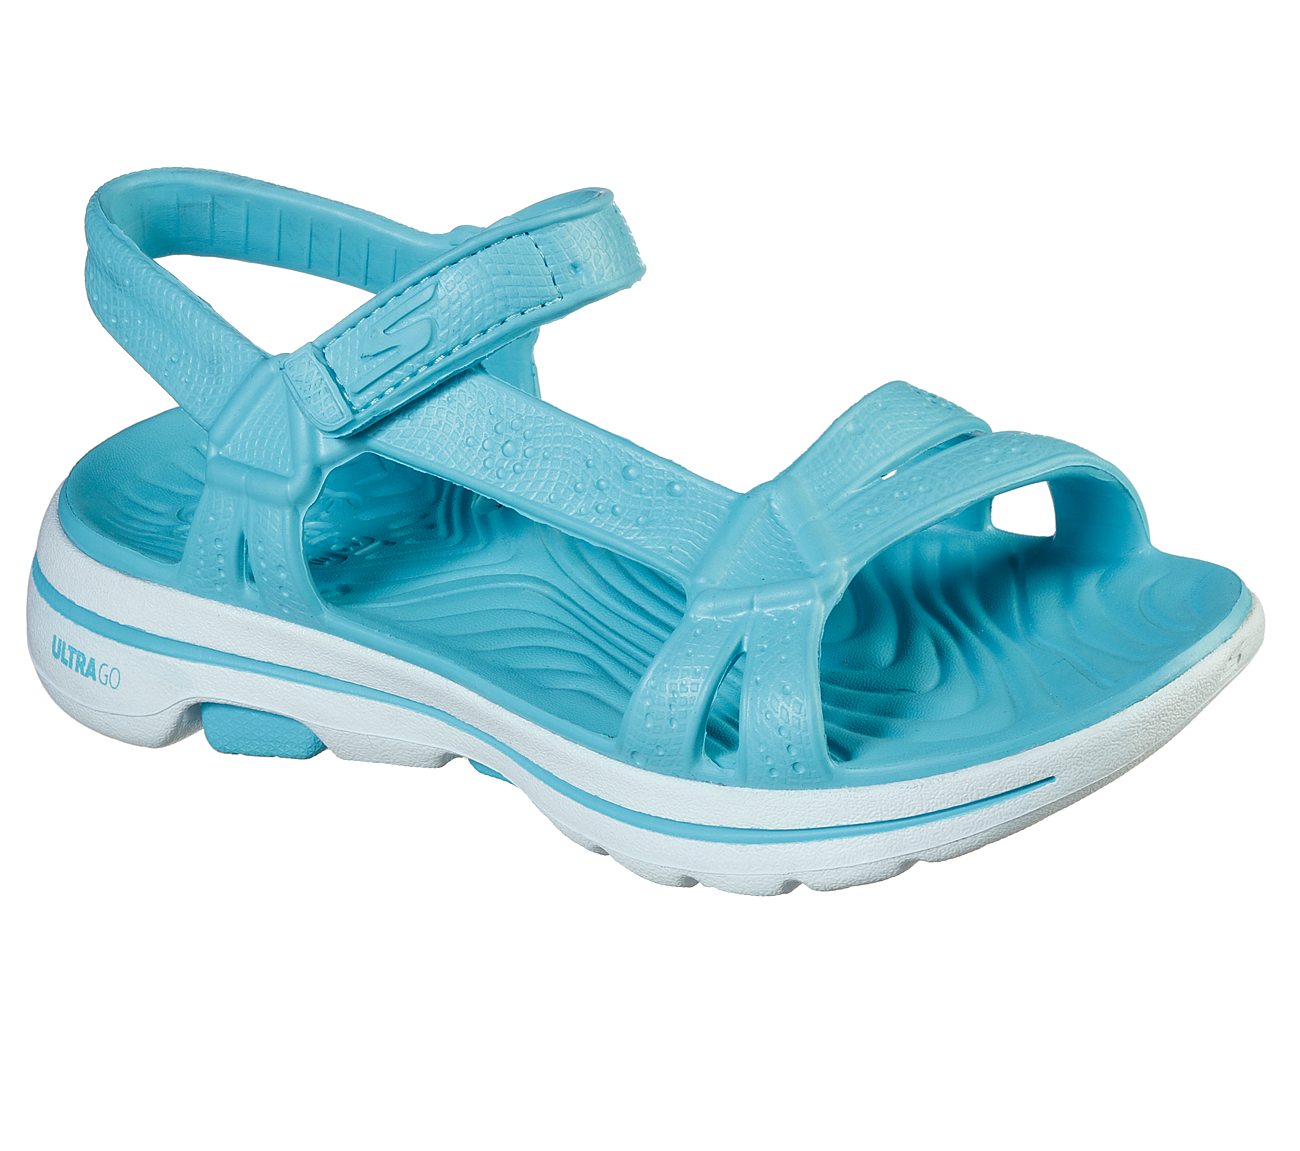 GO WALK 5 FOAMIES - TAHITI, BLUE Footwear Right View